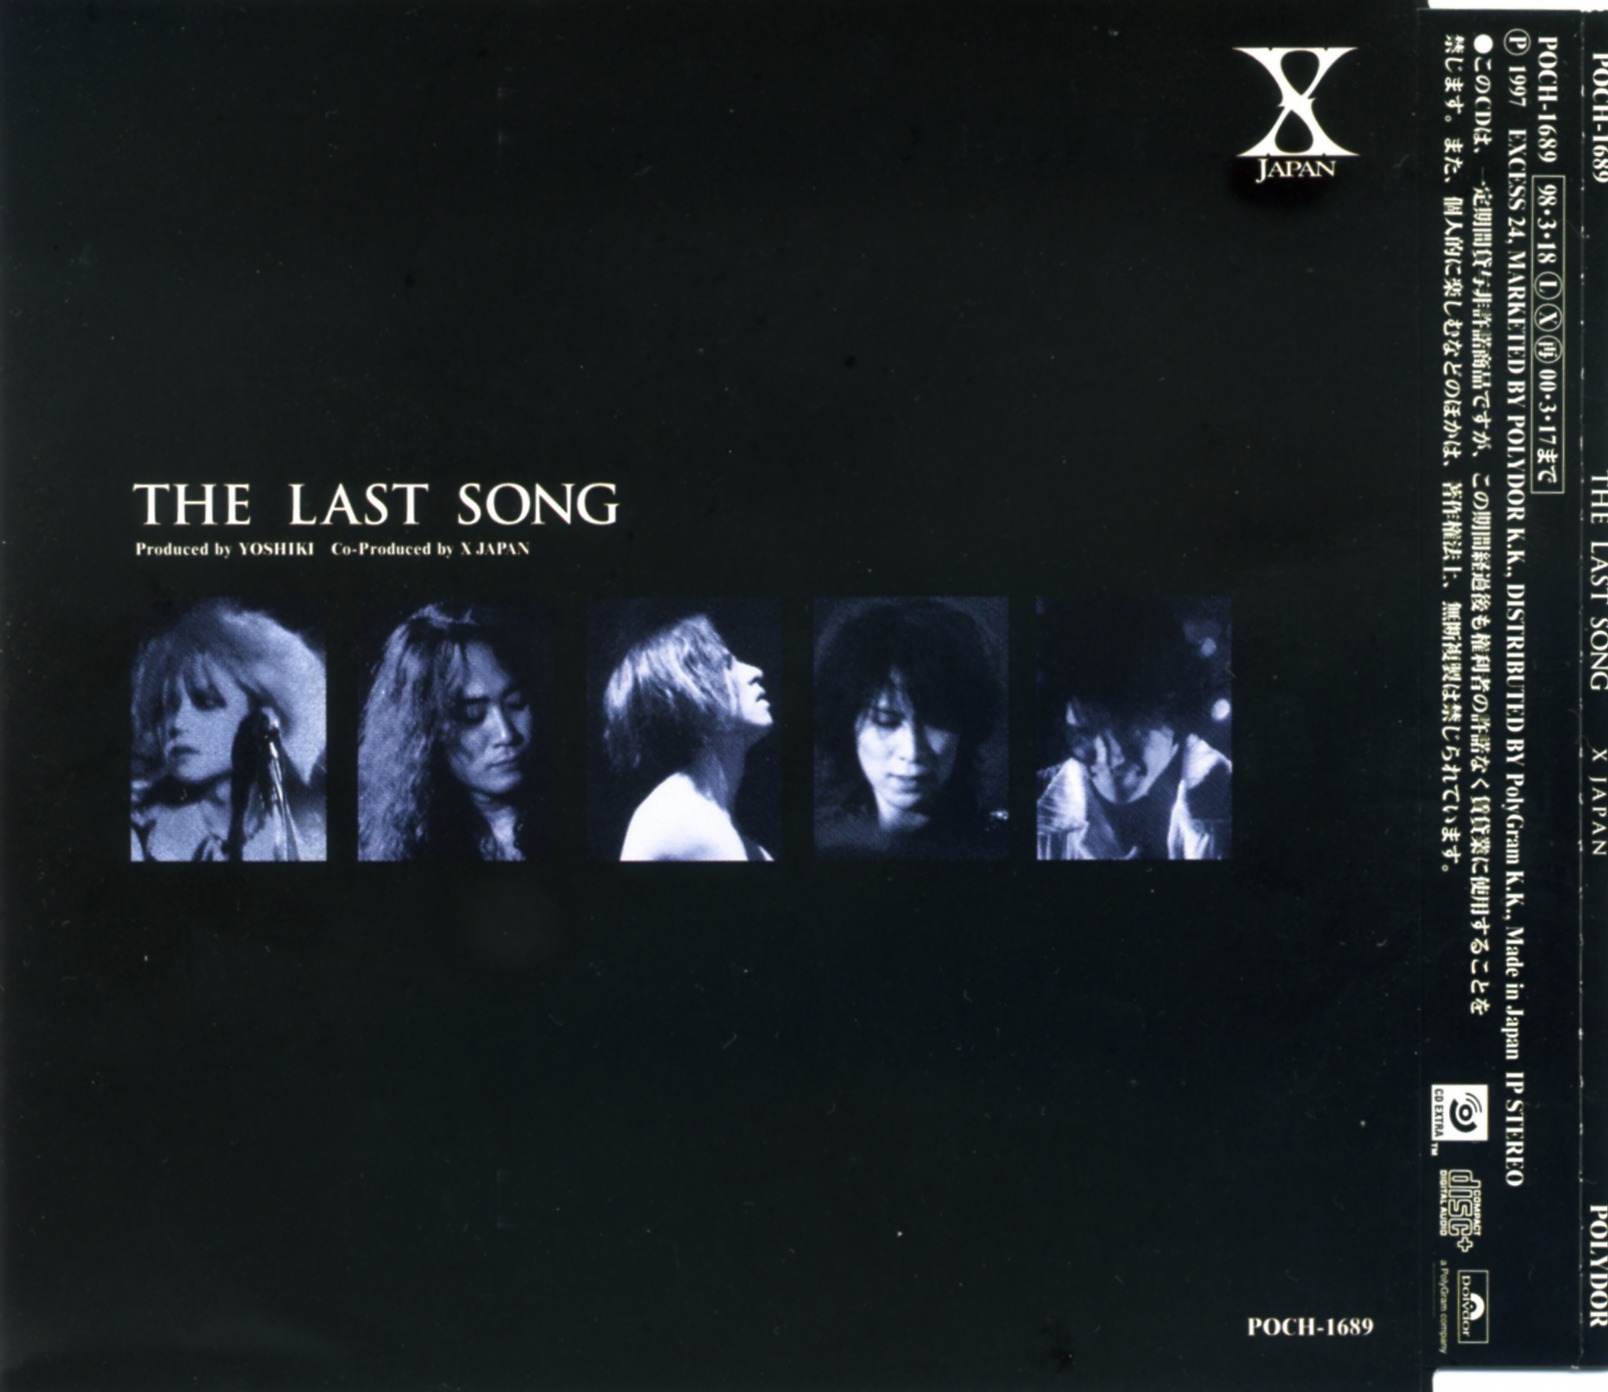 X Japan The Last Song 歌詞翻訳集